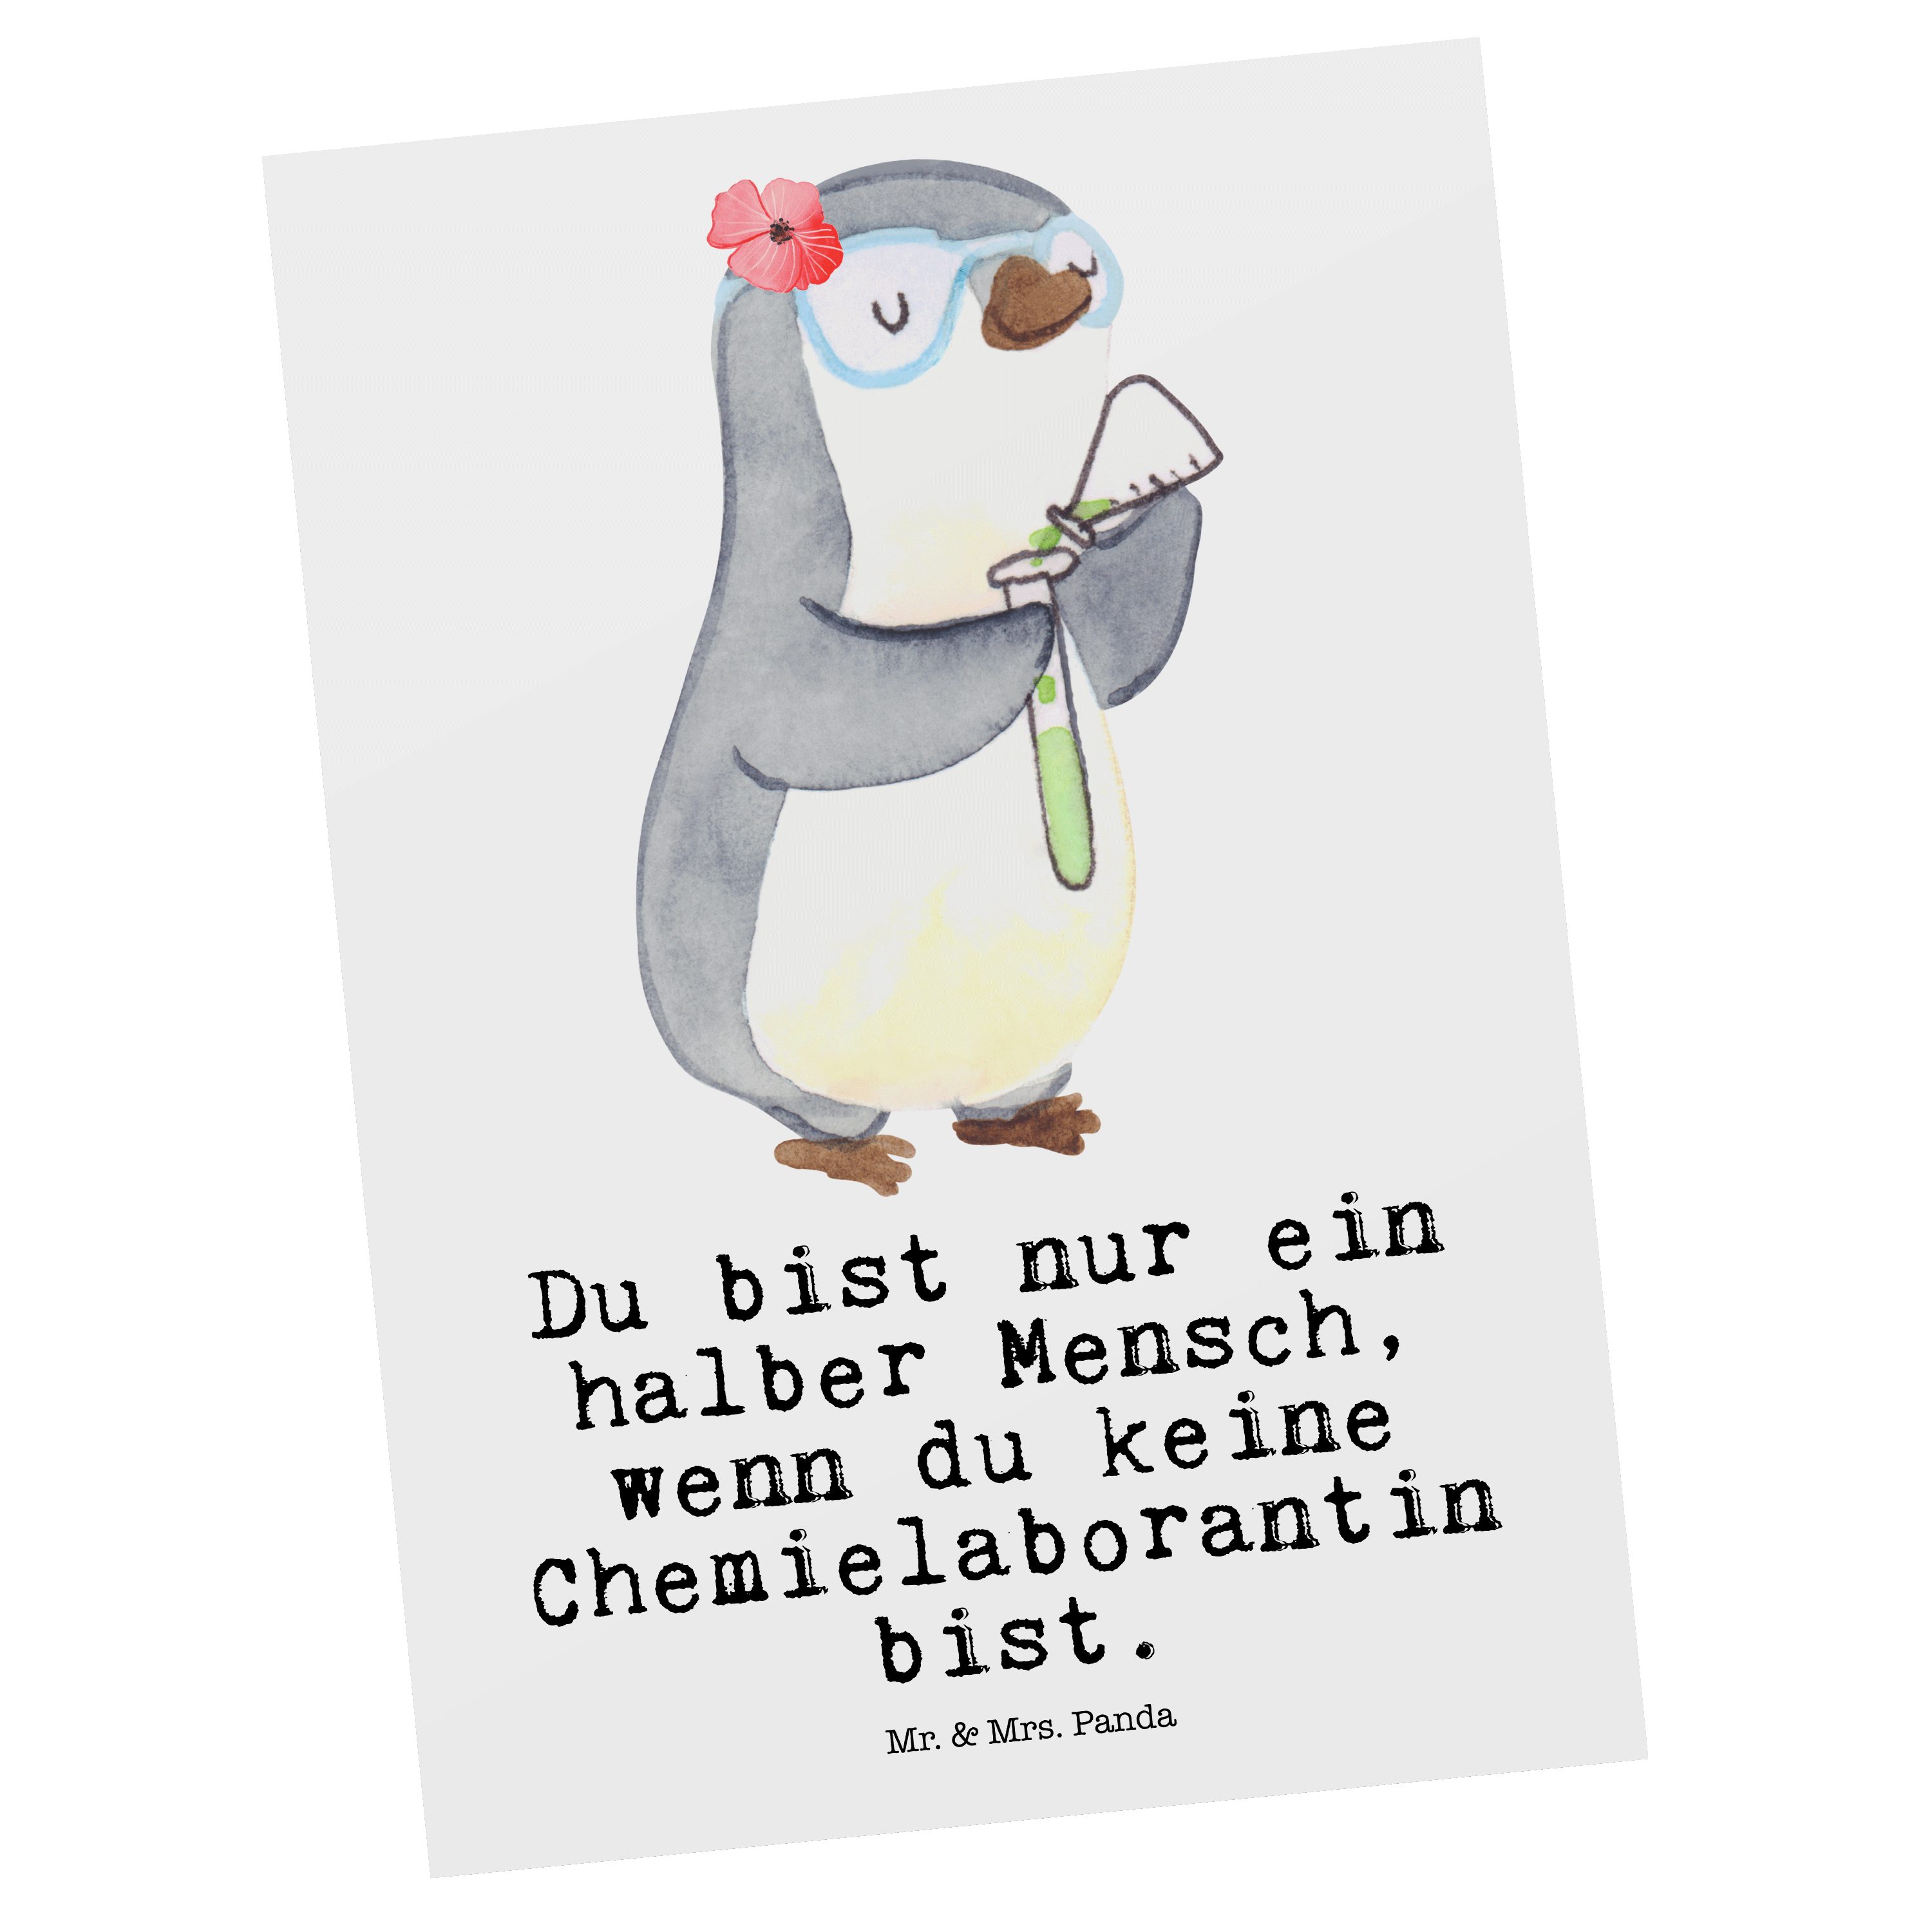 Mr. & Mrs. Panda Postkarte Chemielaborantin mit Herz - Weiß - Geschenk, Jubiläum, Forschung, Geb